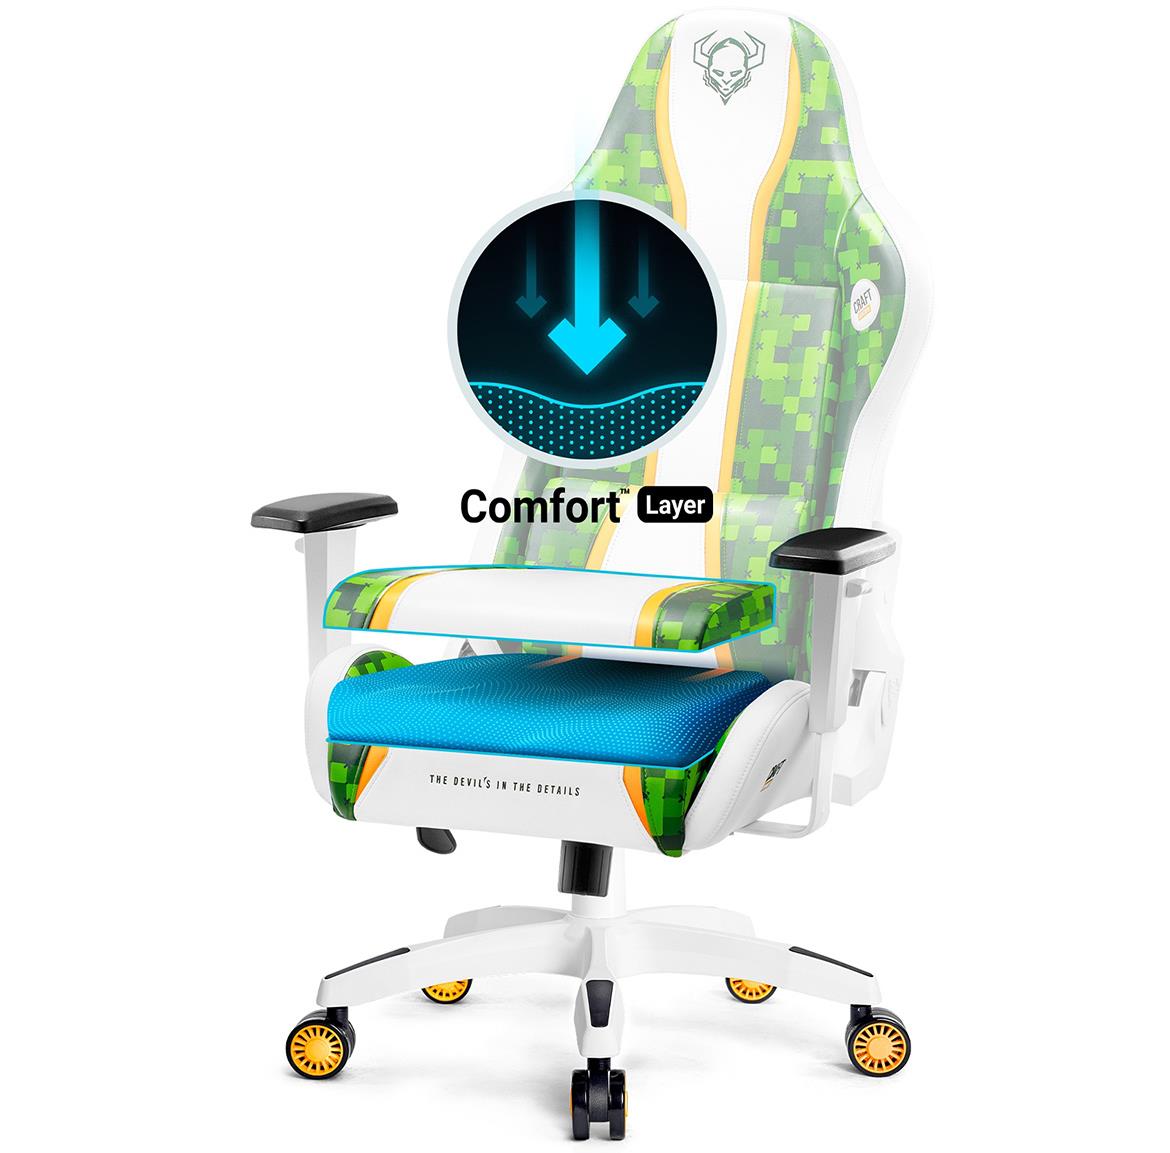 King Diablo X-One 2.0 kancelarijska stolica 72x54x134 cm belo zelena